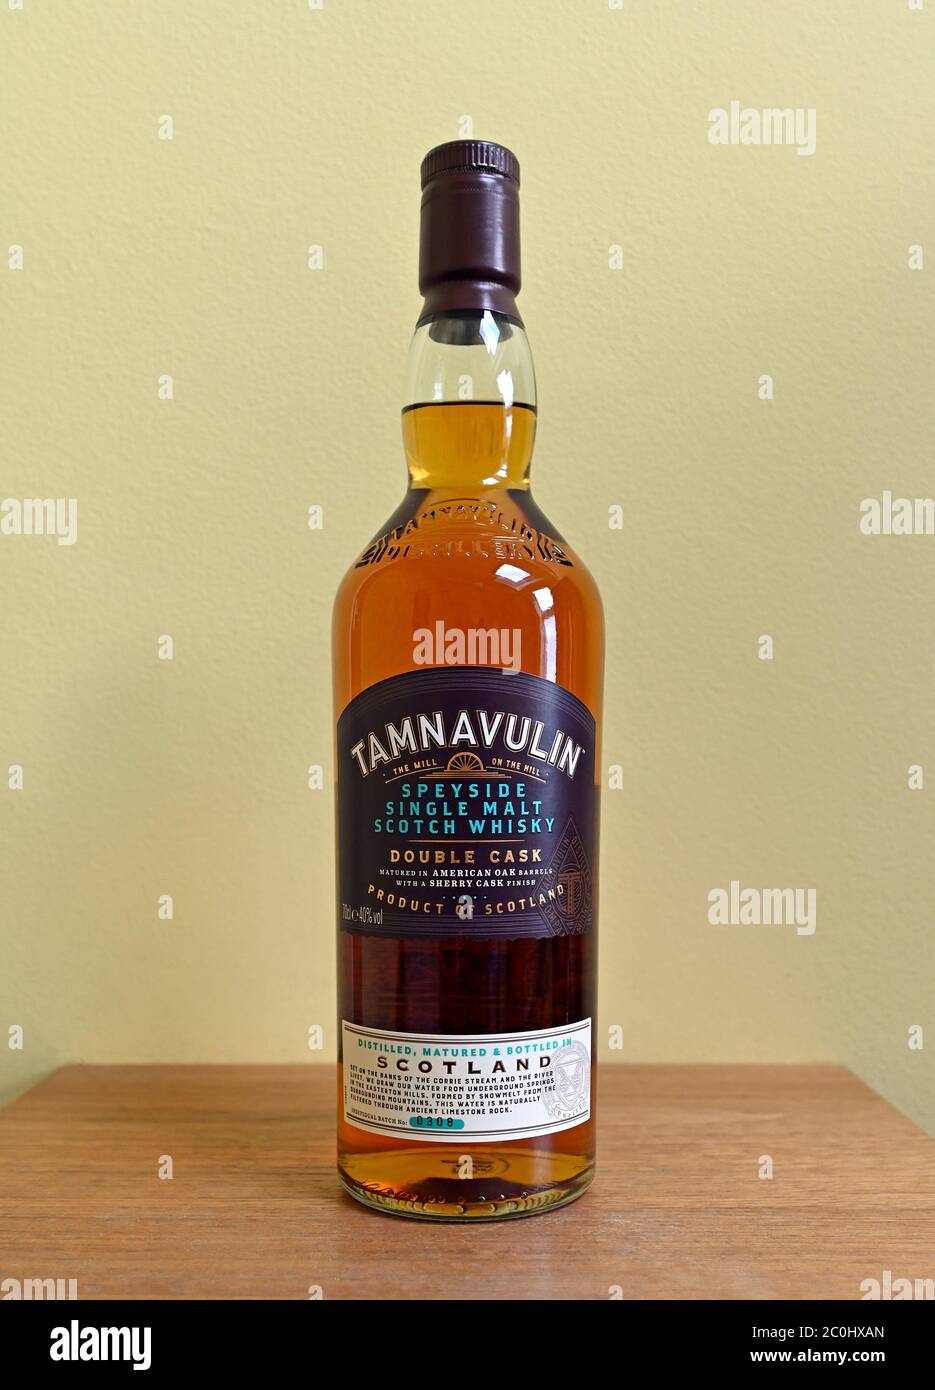 Bottle of Tamnavulin Speyside single malt Scotch Whisky. Stock Photo